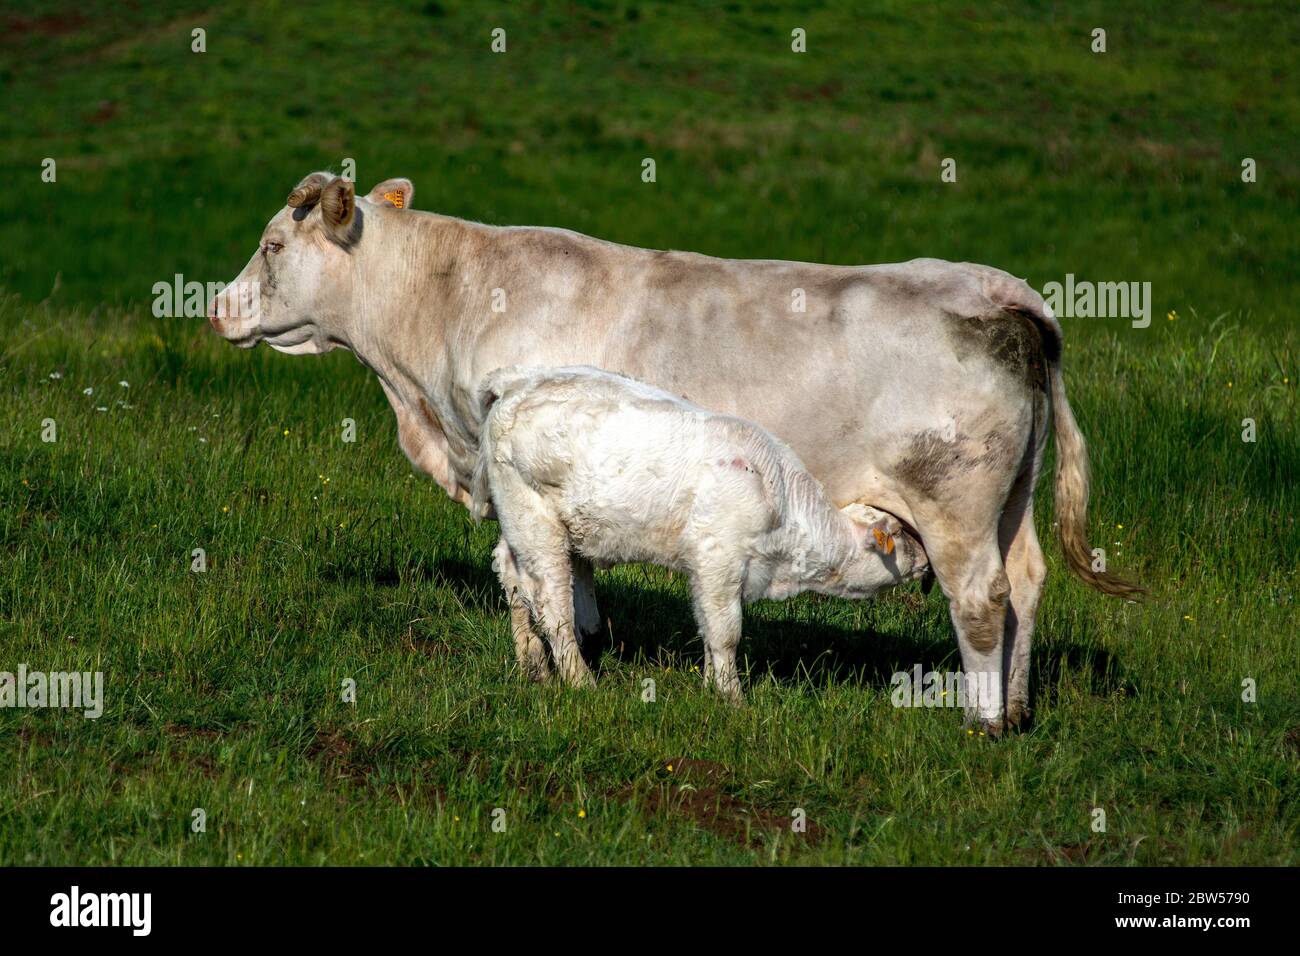 Un jeune veau qui se nourrit de sa mère. Auvergne. France Banque D'Images